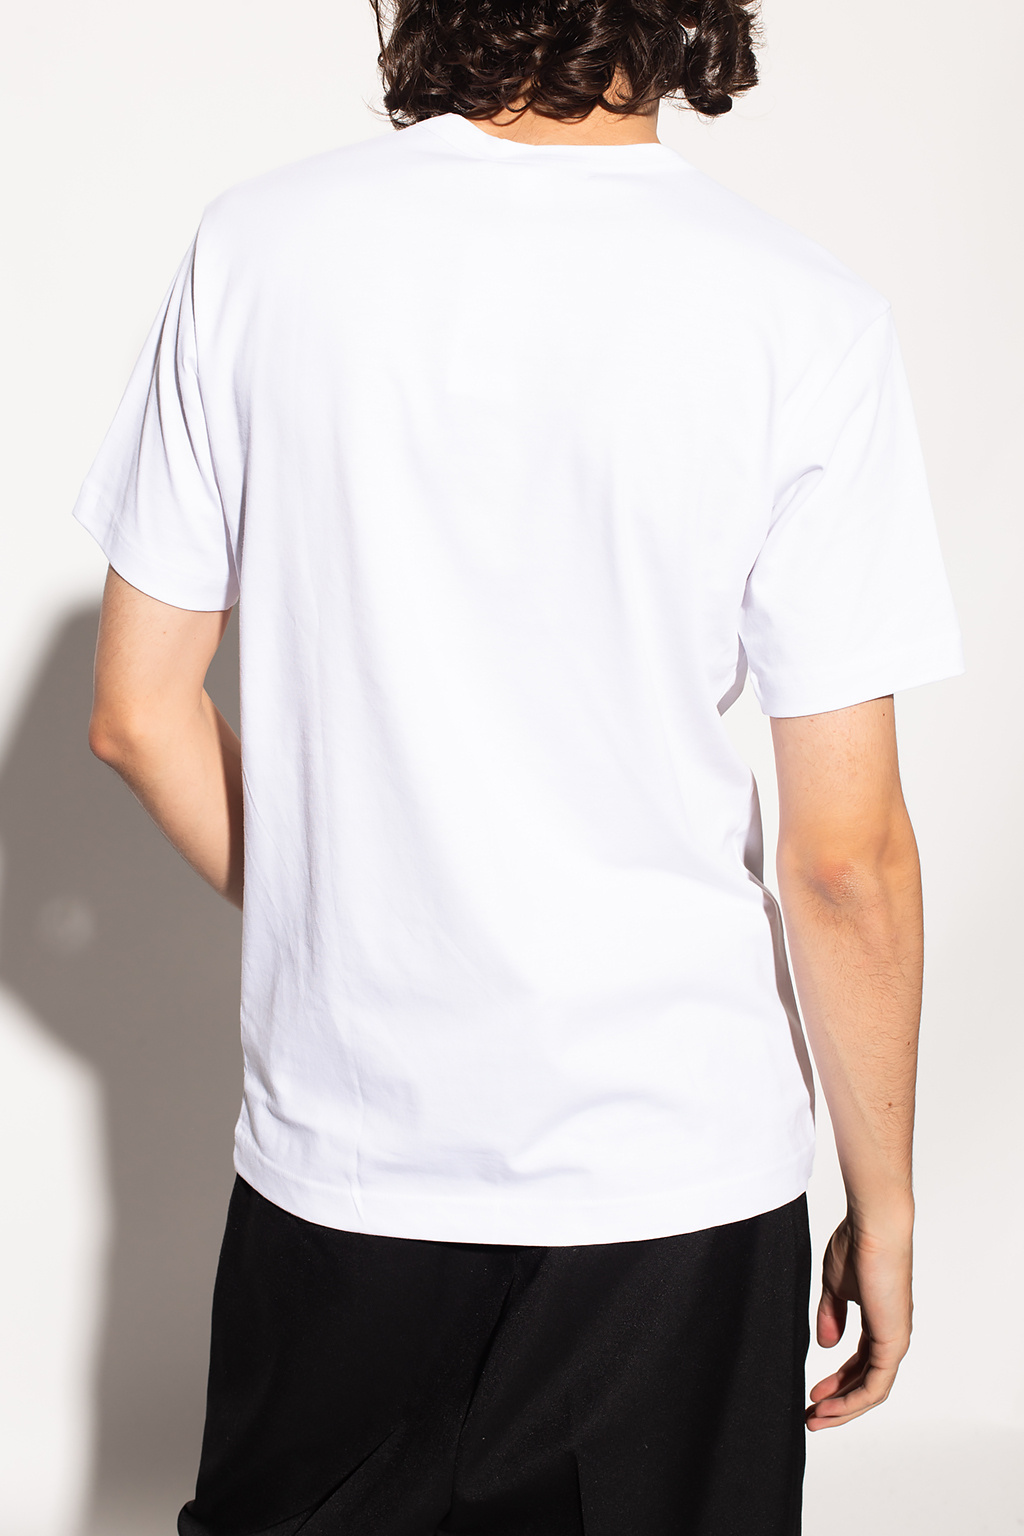 Nike Sportswear Air Max 90 Essential Triple White Men S 11 Een goede sweatshirt is een must voor het herfstseizoen